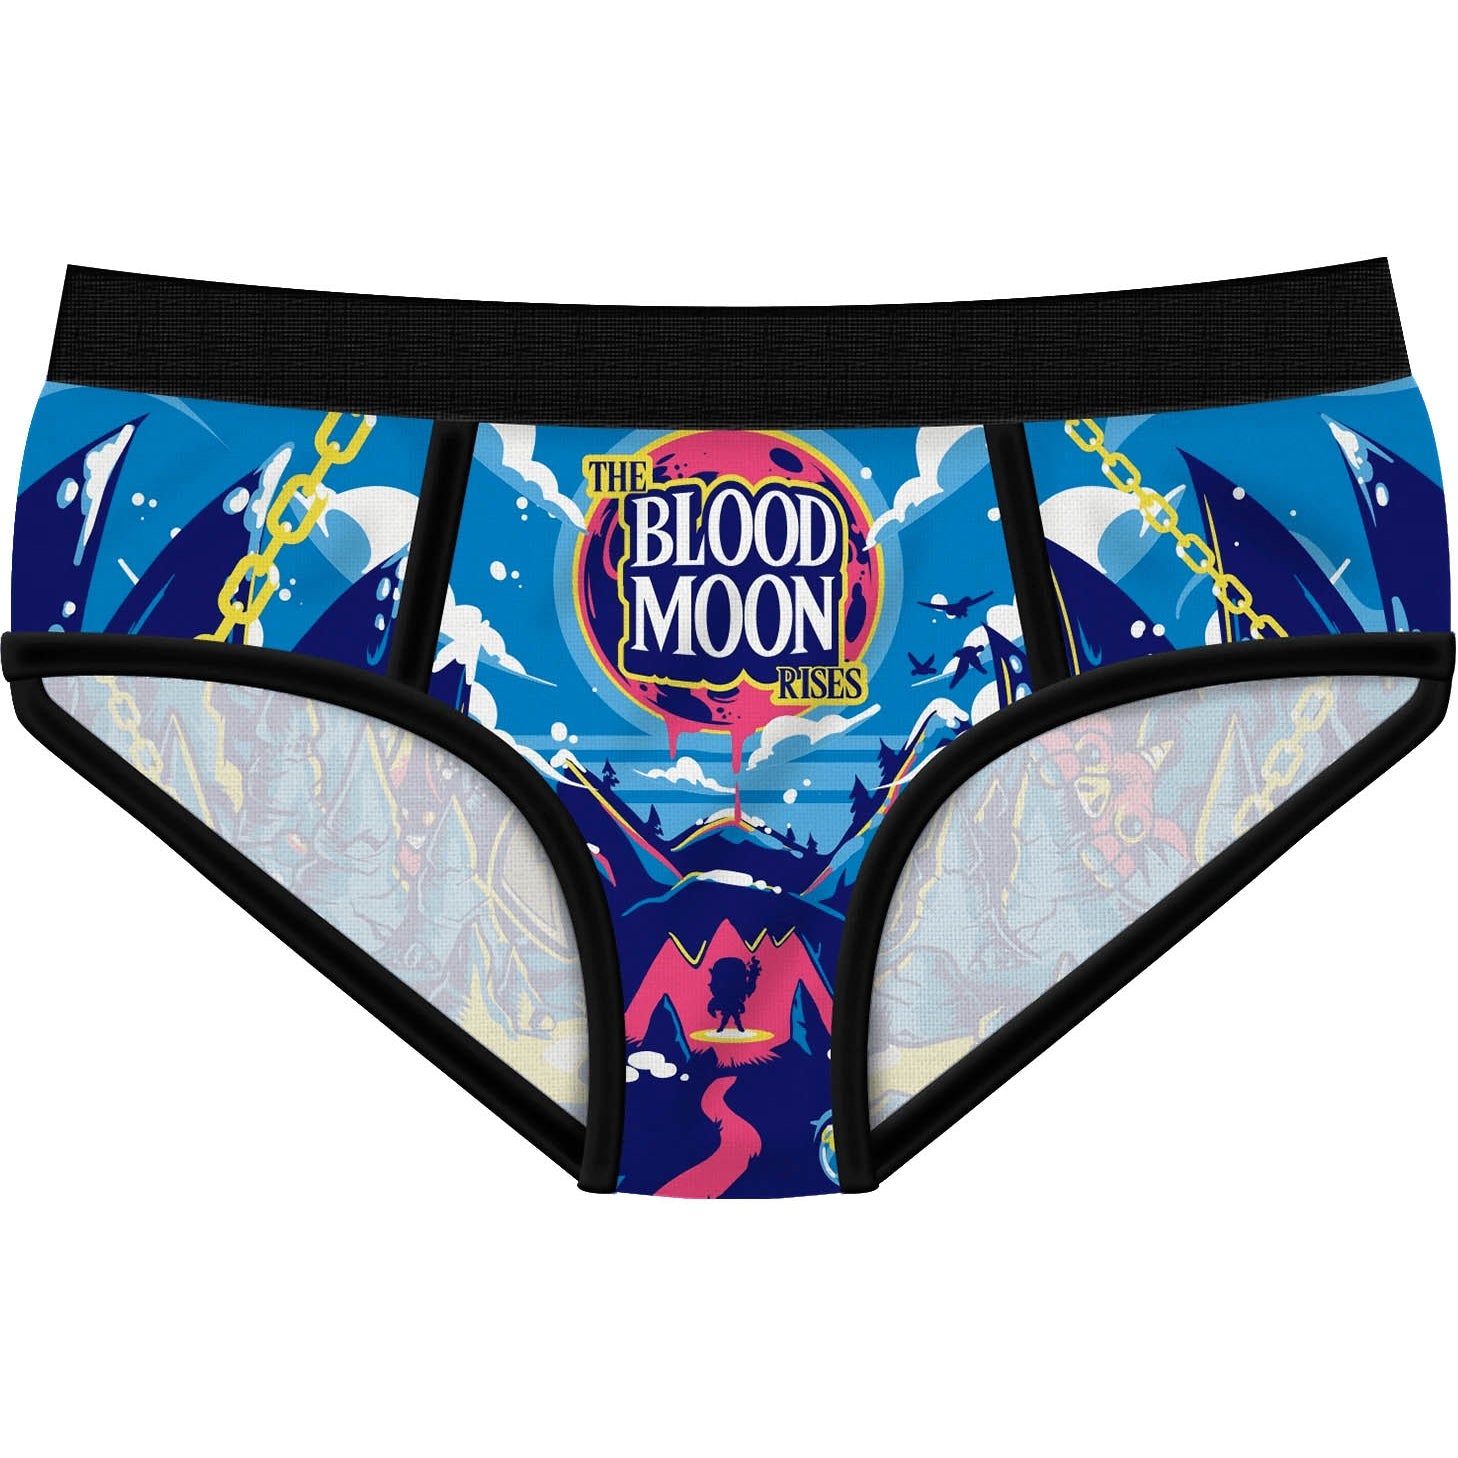 Harebrained Period Panties - Shark Week Panties - Buy Online Australia